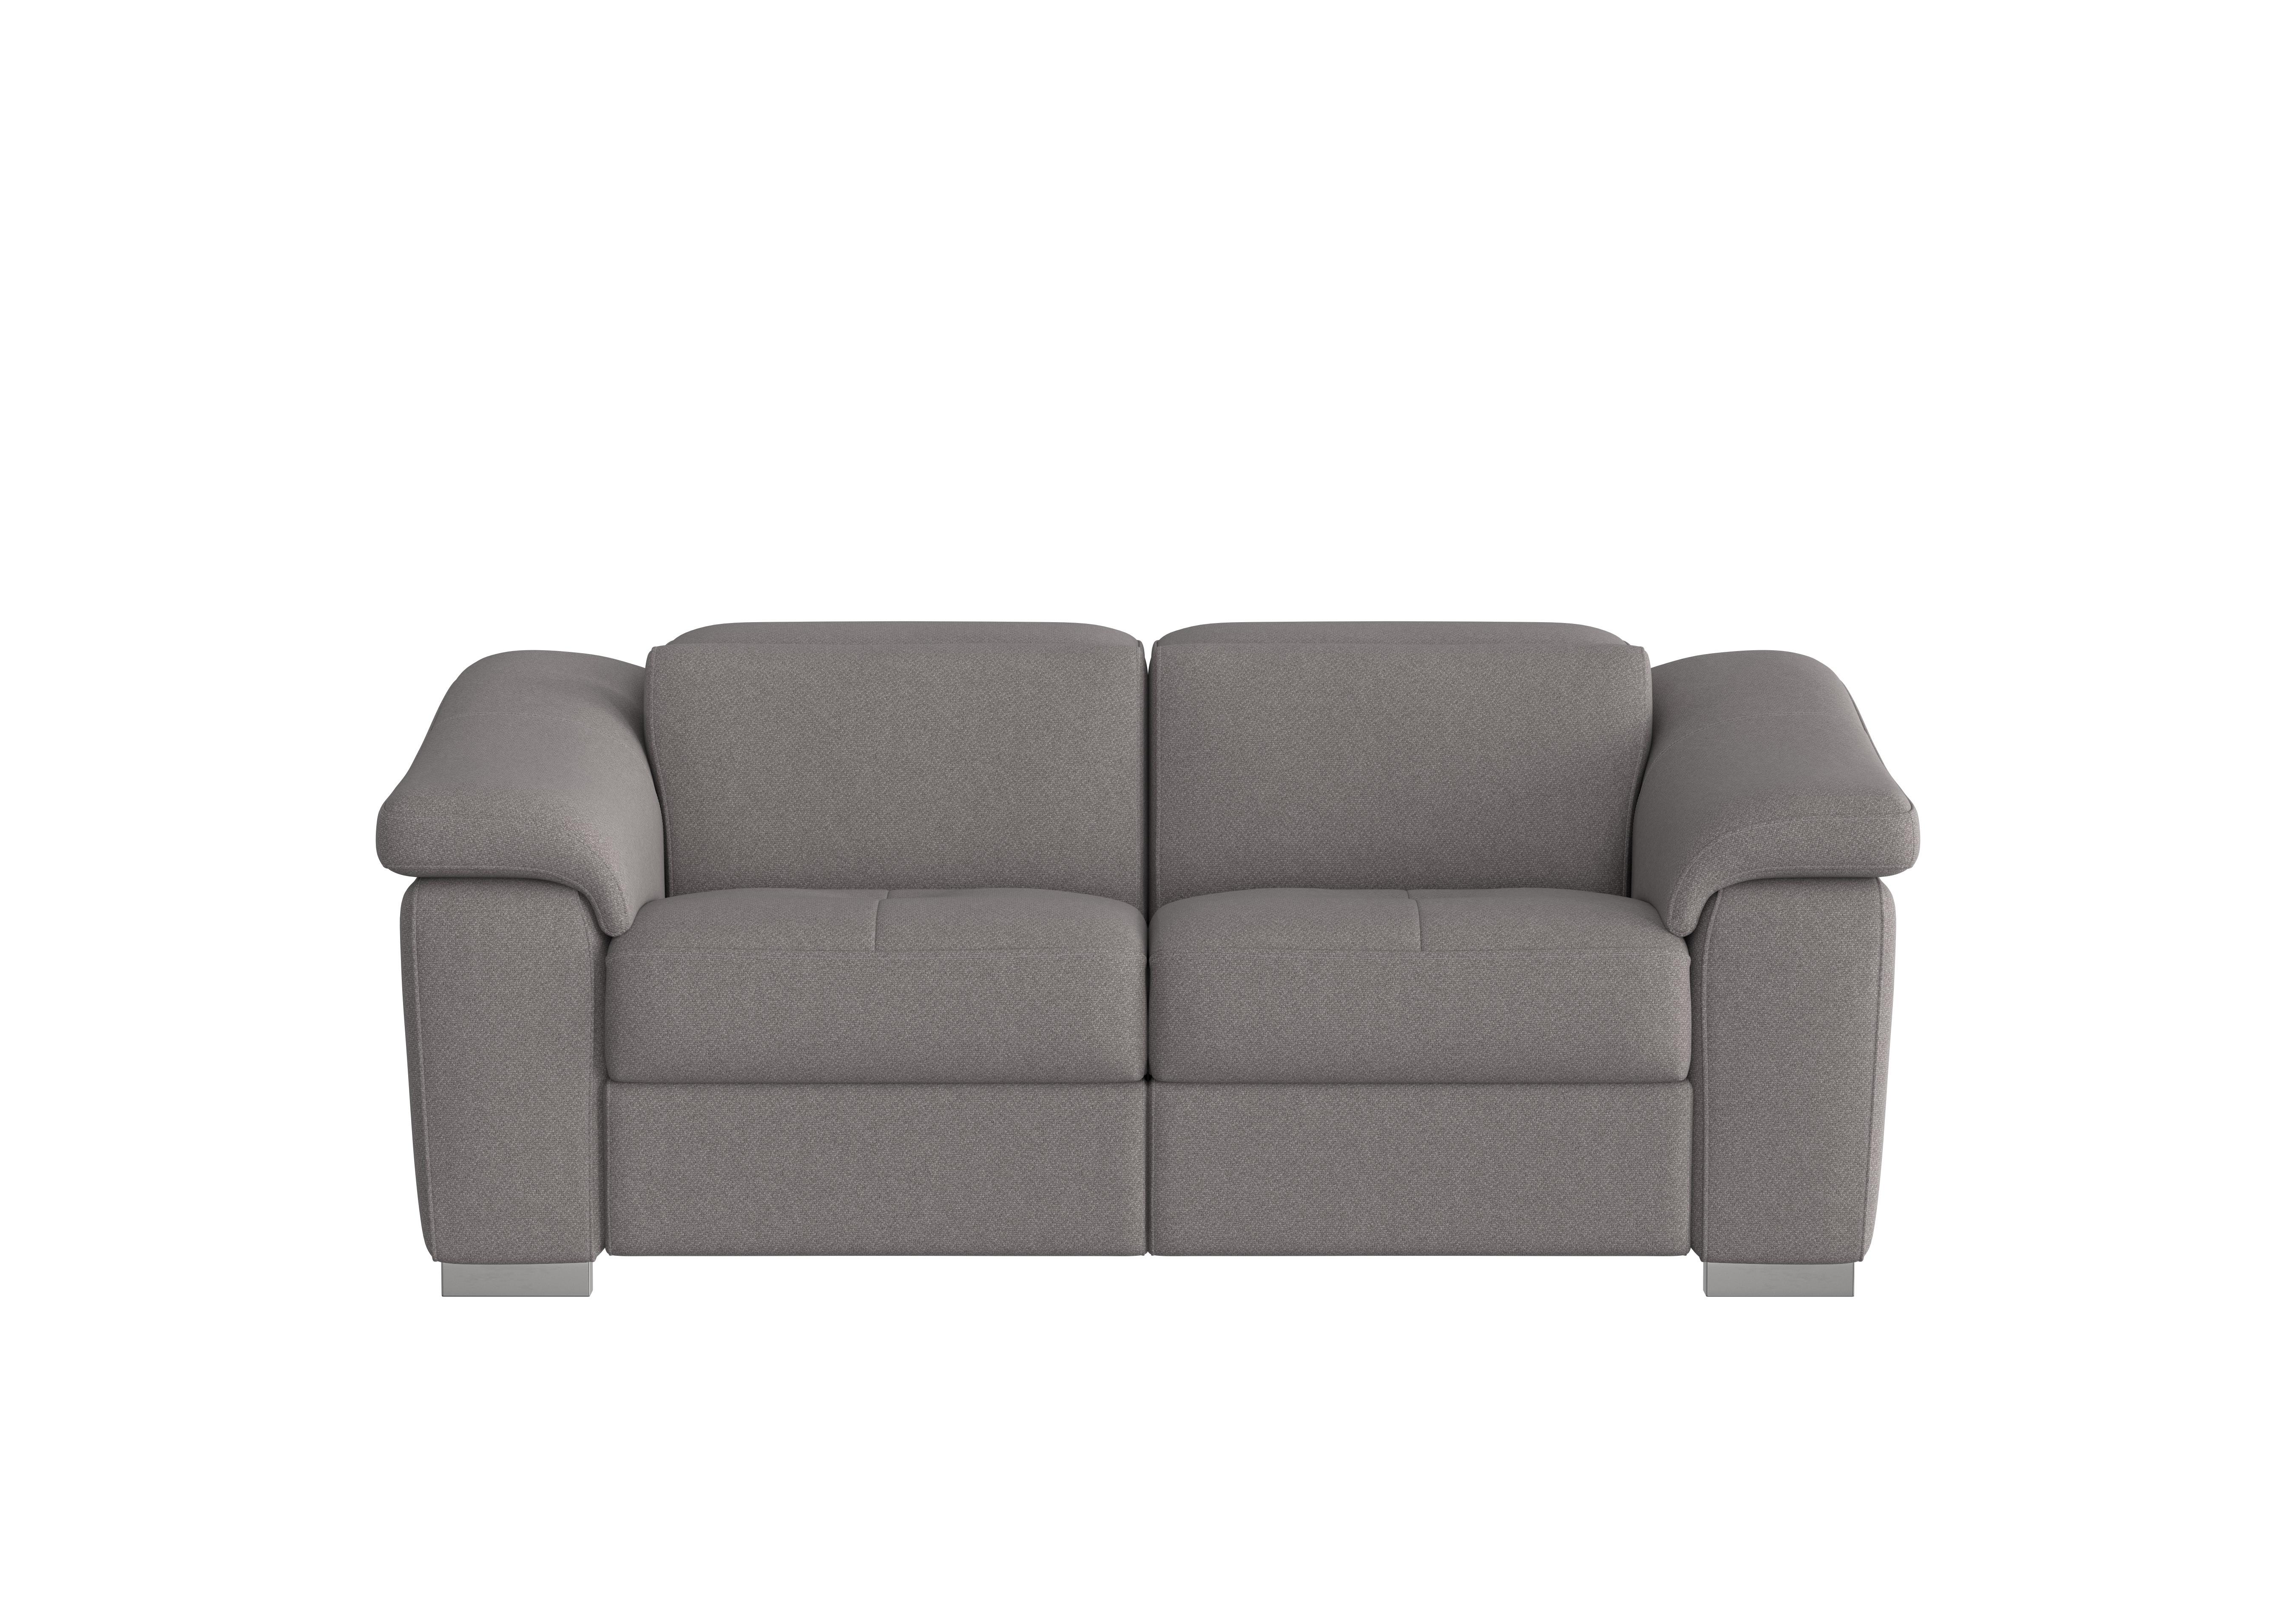 Galileo 2 Seater Fabric Sofa in Coupe Grigio Topo 609 Ch on Furniture Village